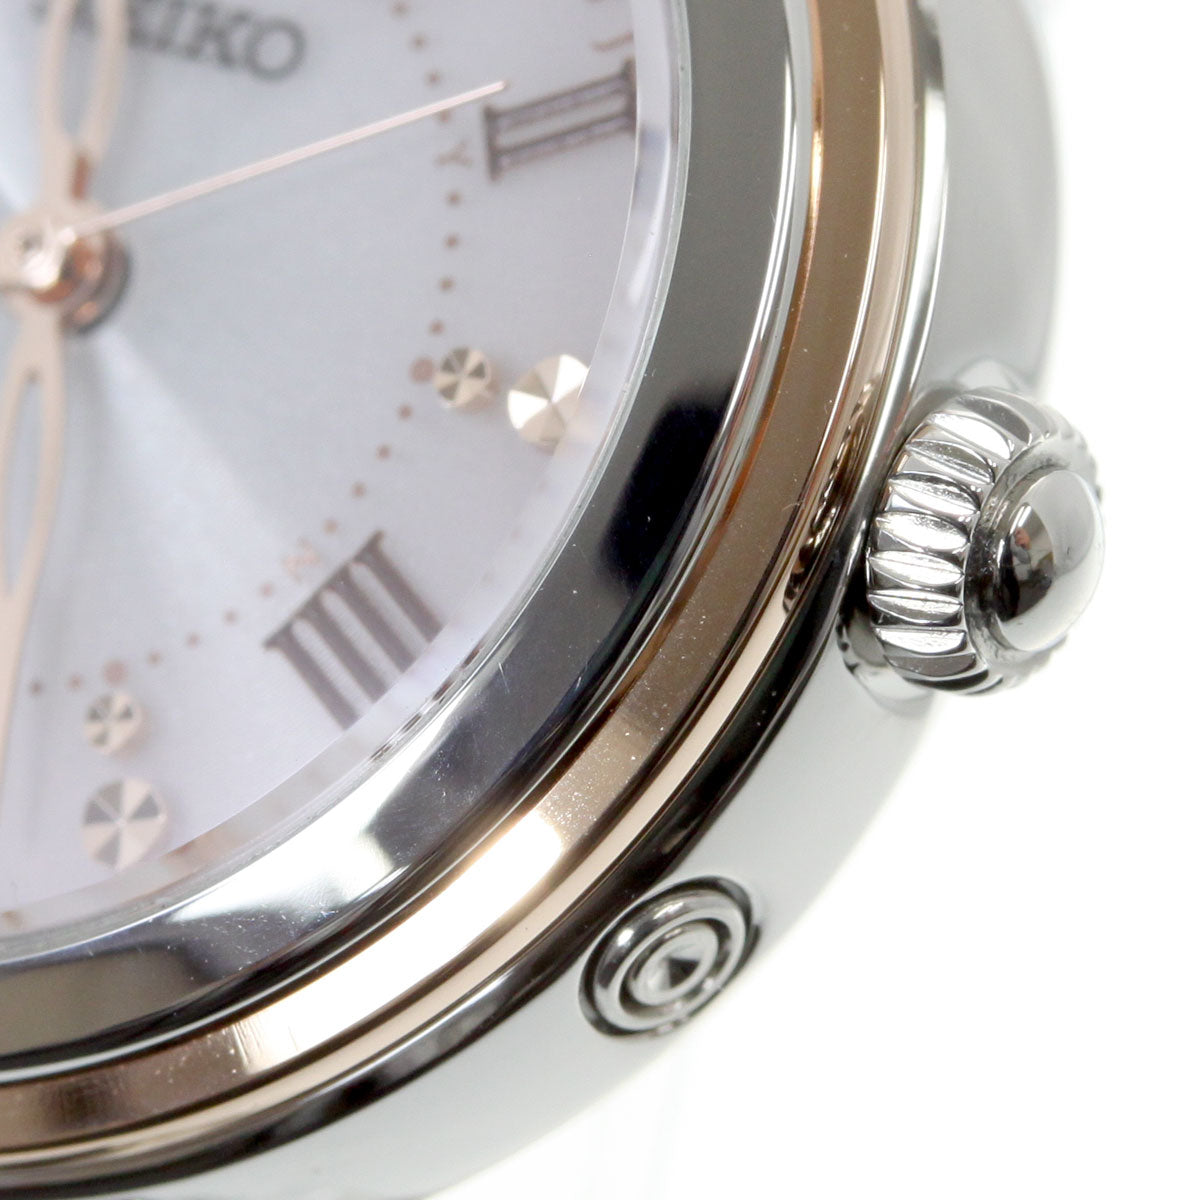 セイコー セレクション SEIKO SELECTION 電波 ソーラー 電波時計 腕時計 レディース SWFH090